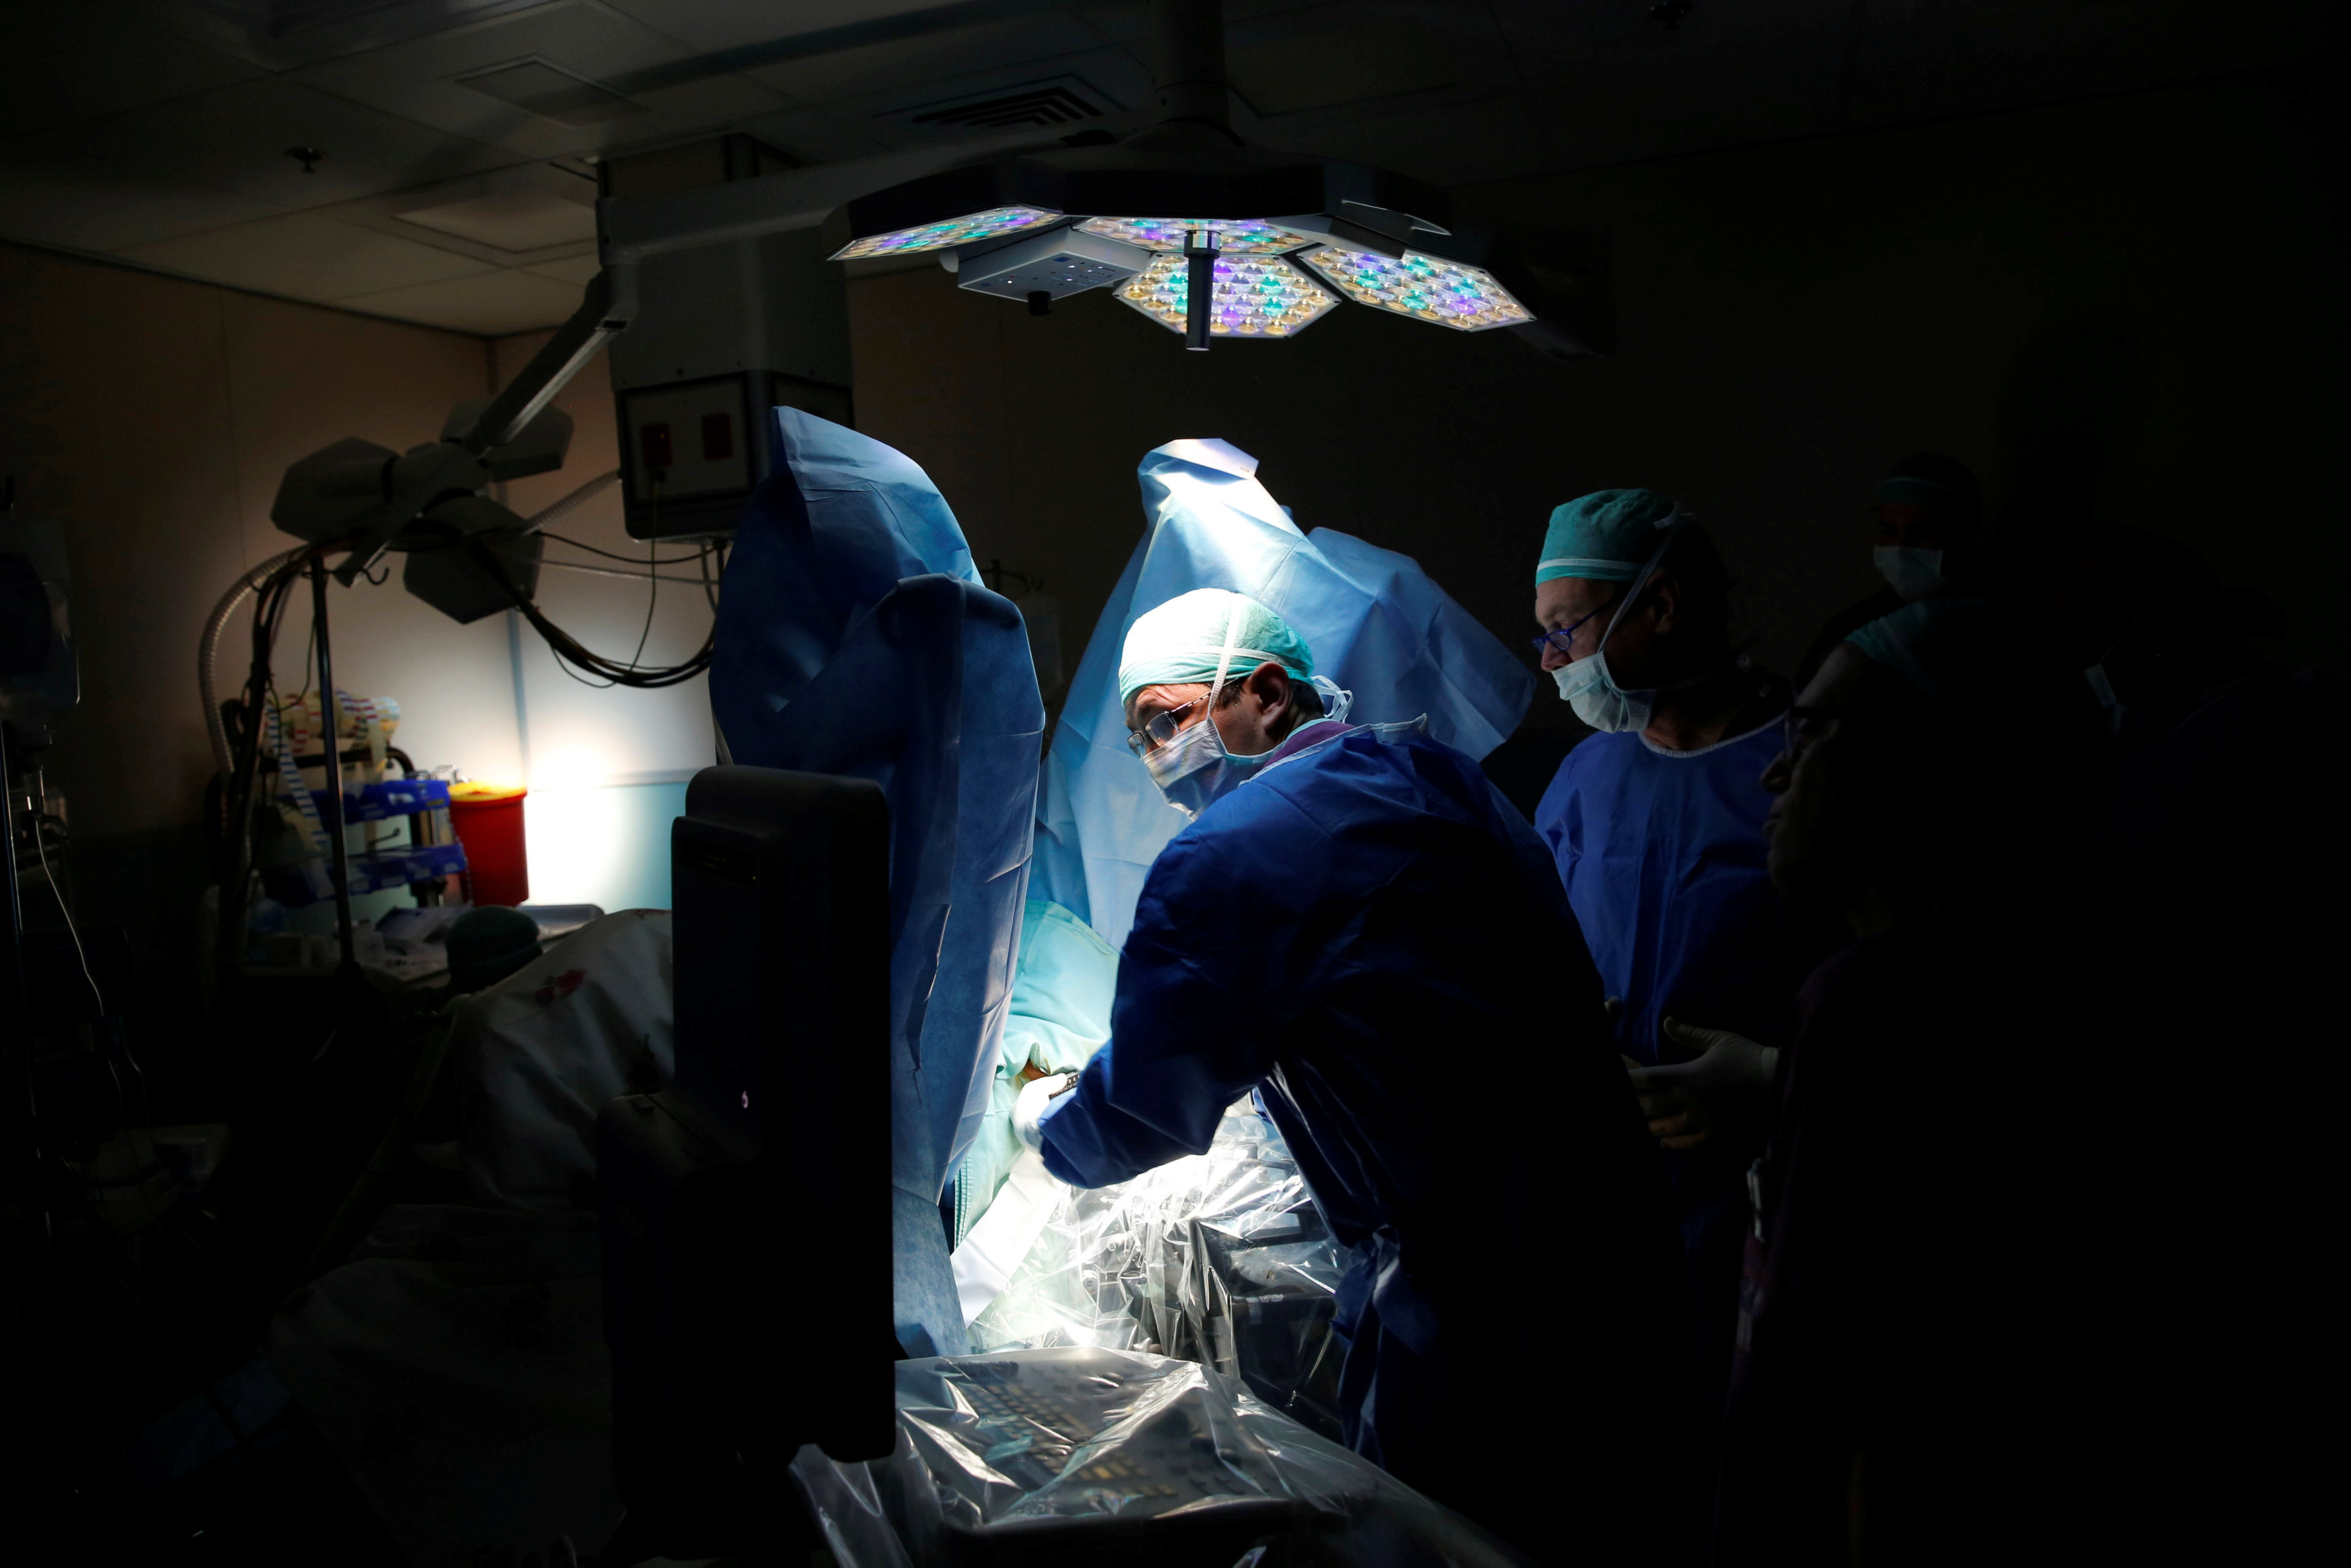 以色列特拉维夫拉马特艾维夫医疗中心的医生们2016年6月在泌尿外科手术室使用以国开发的光动力疗法，治疗病患的摄护腺癌肿瘤。路透